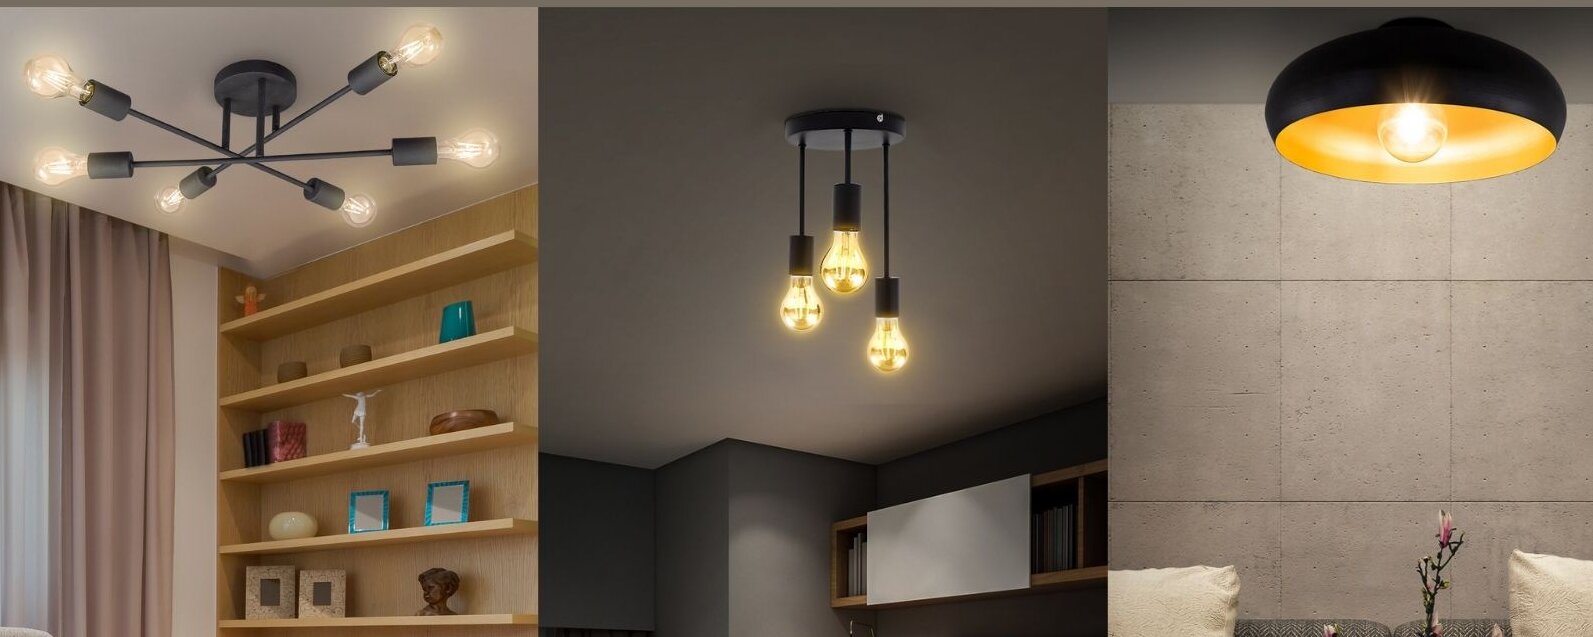 Design LED Decken Lampe Leuchte Wohn Ess Zimmer 11,2W Beleuchtung Living-XXL